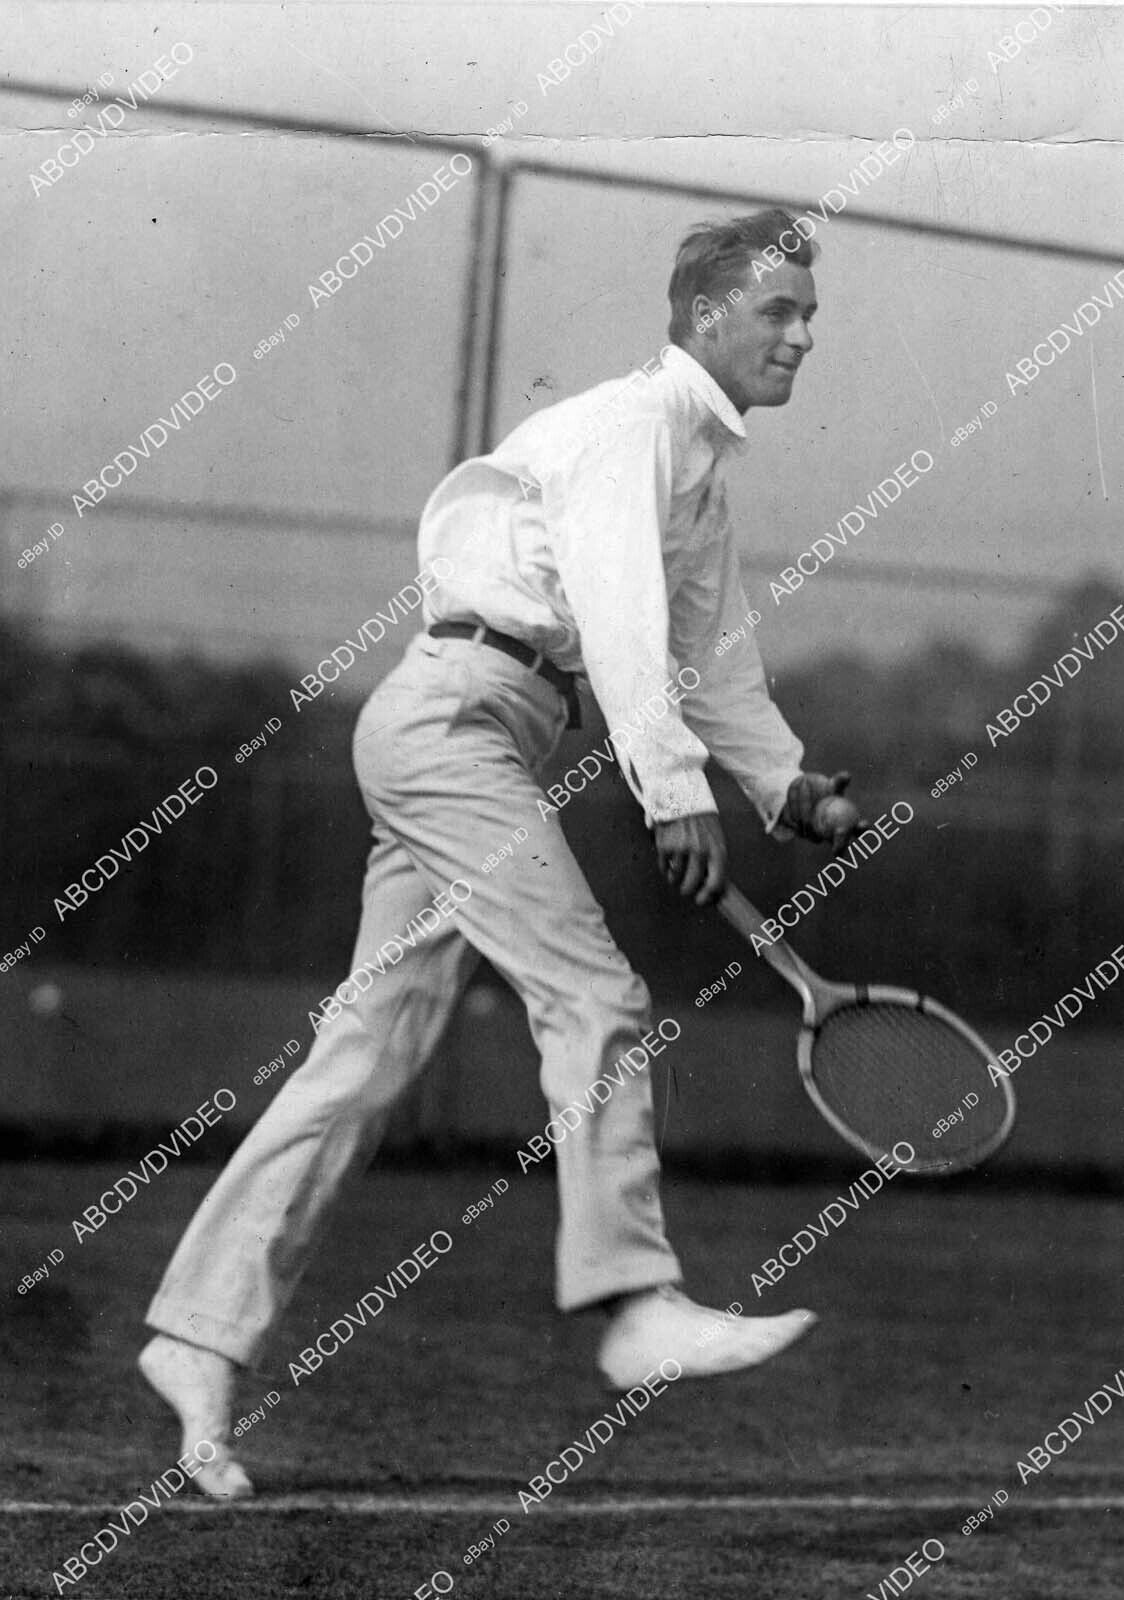 crp-36112 circa 1930 sports tennis Bill Tilden on the court crp-36112